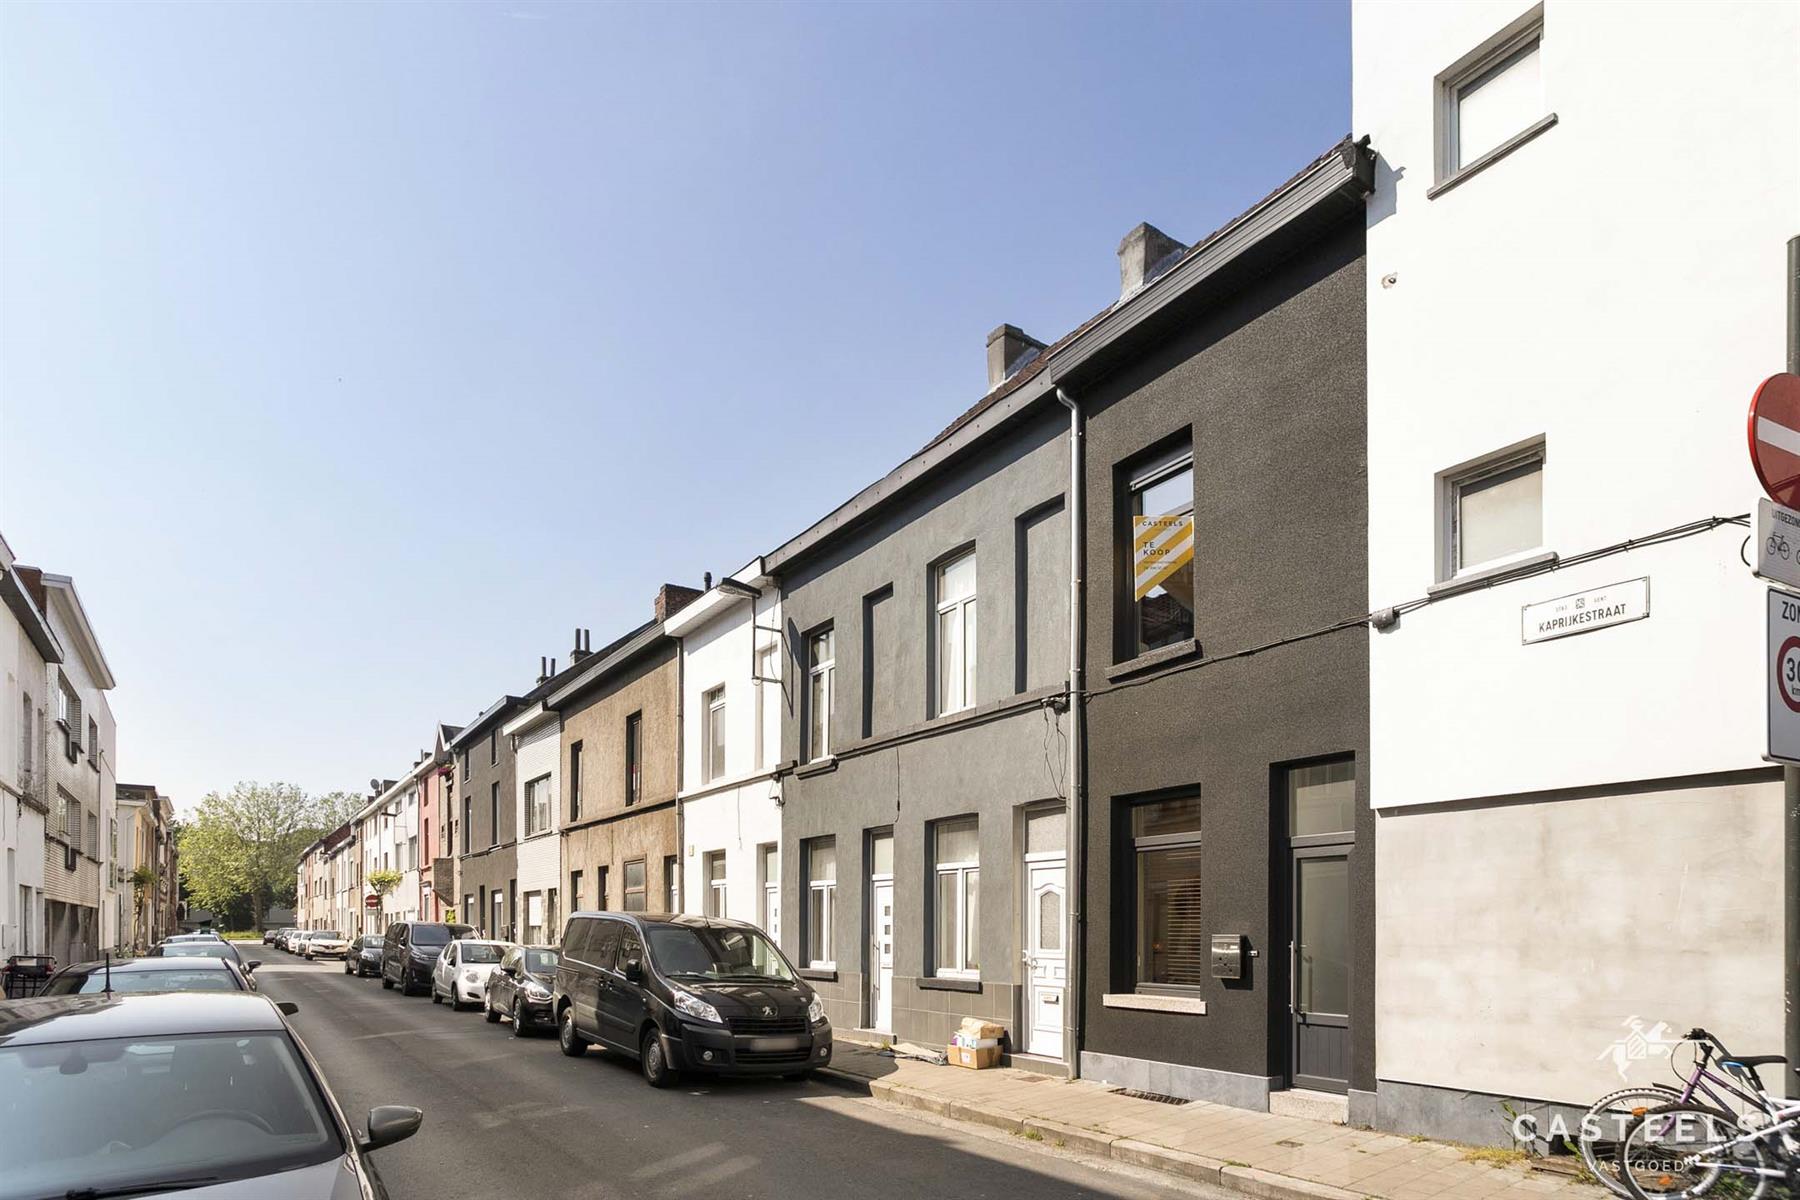 Afbeelding Moderne woning nabij centrum Gent te koop - Casteels Vastgoed